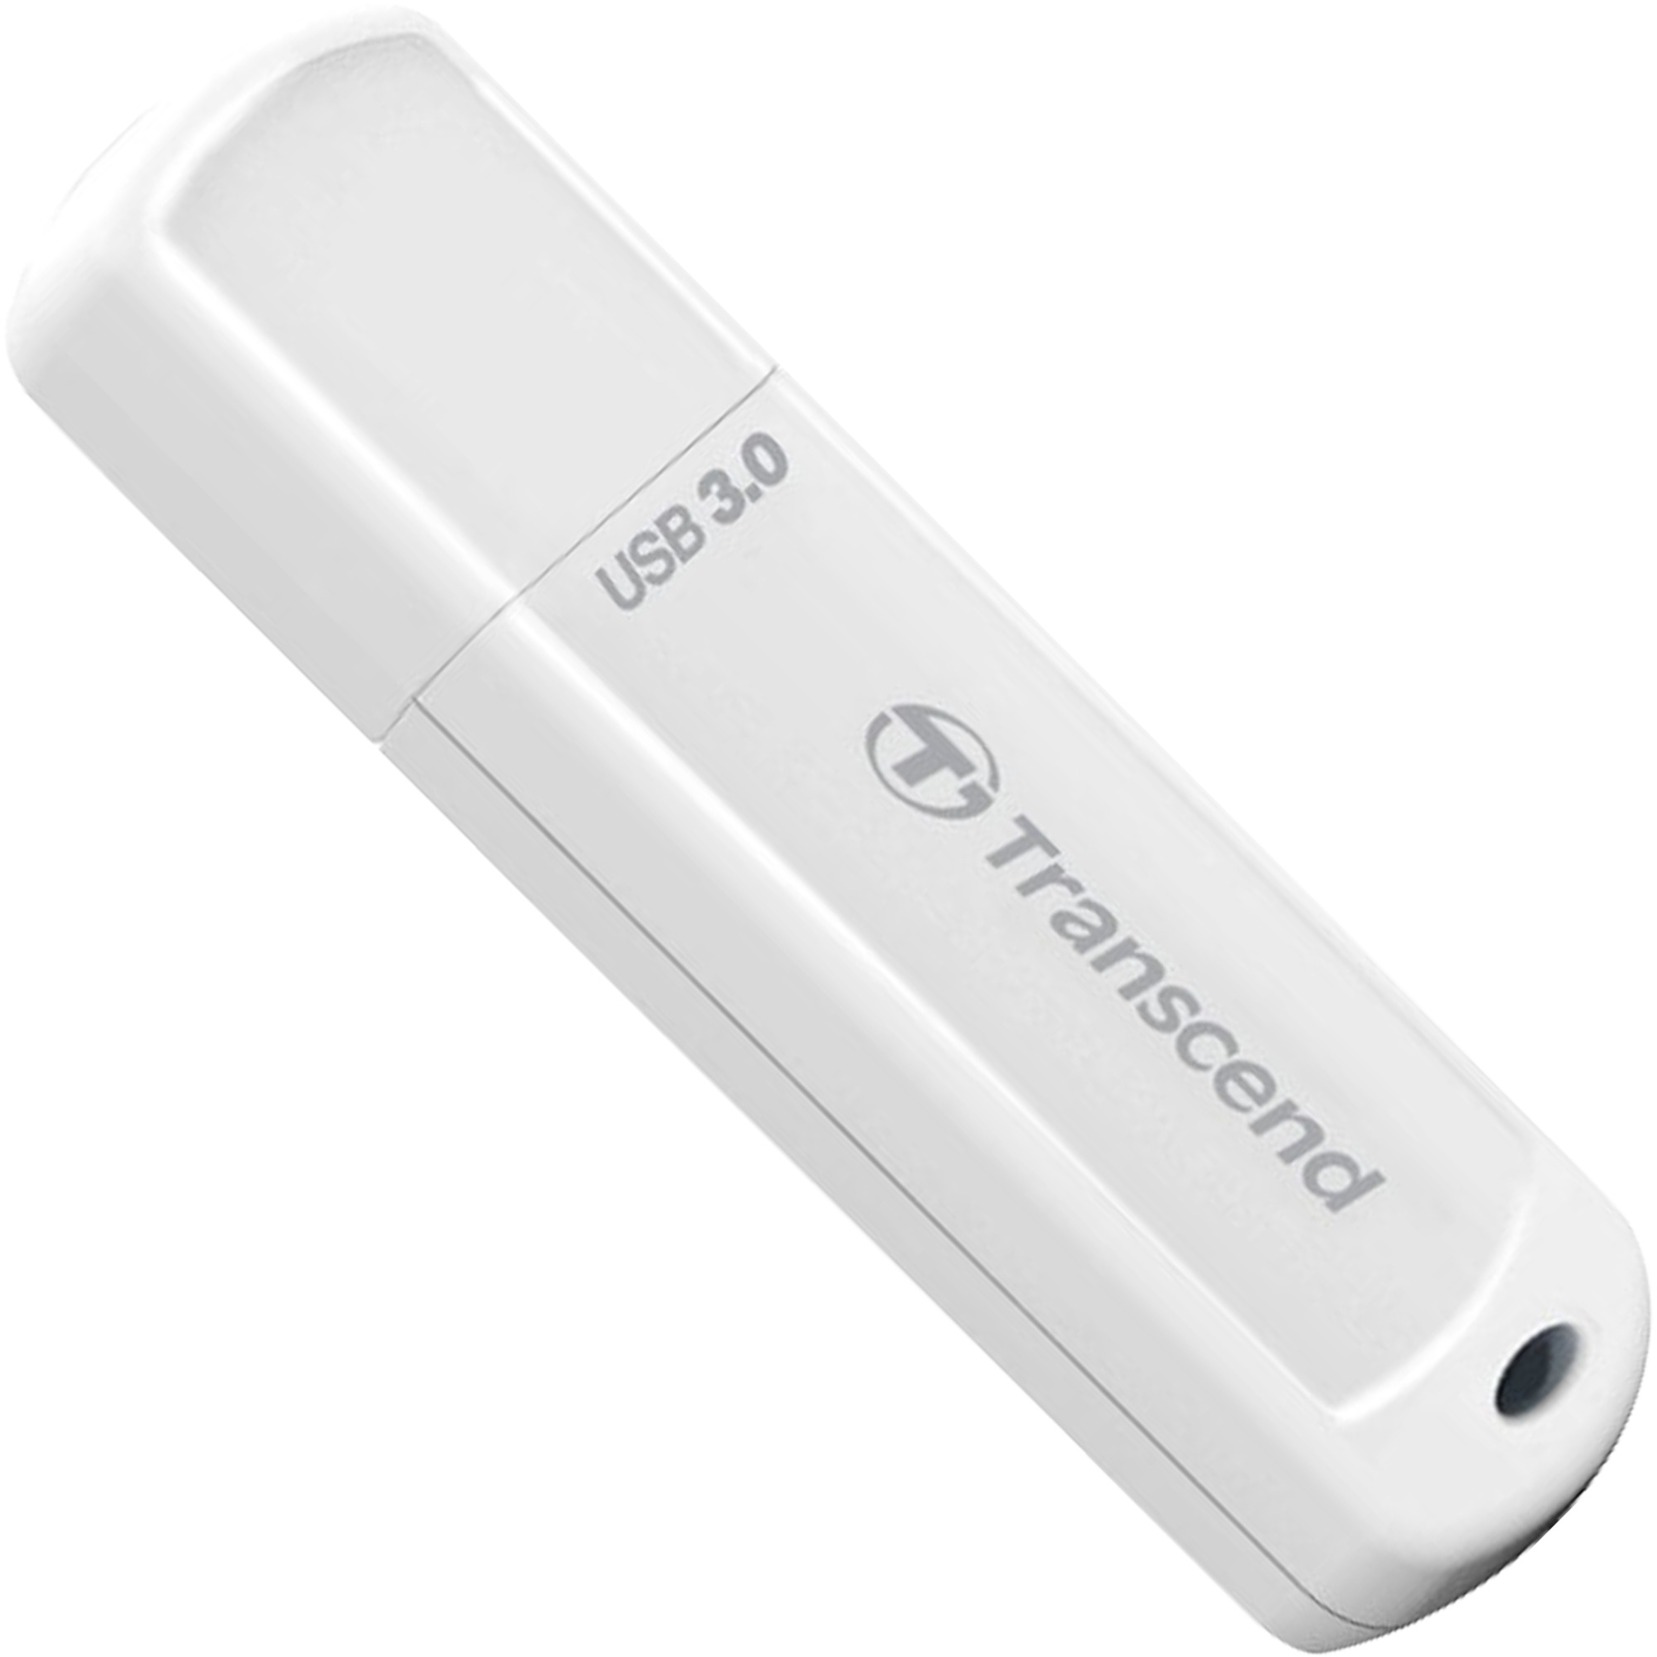 Image of Alternate - JetFlash 730 64 GB, USB-Stick online einkaufen bei Alternate